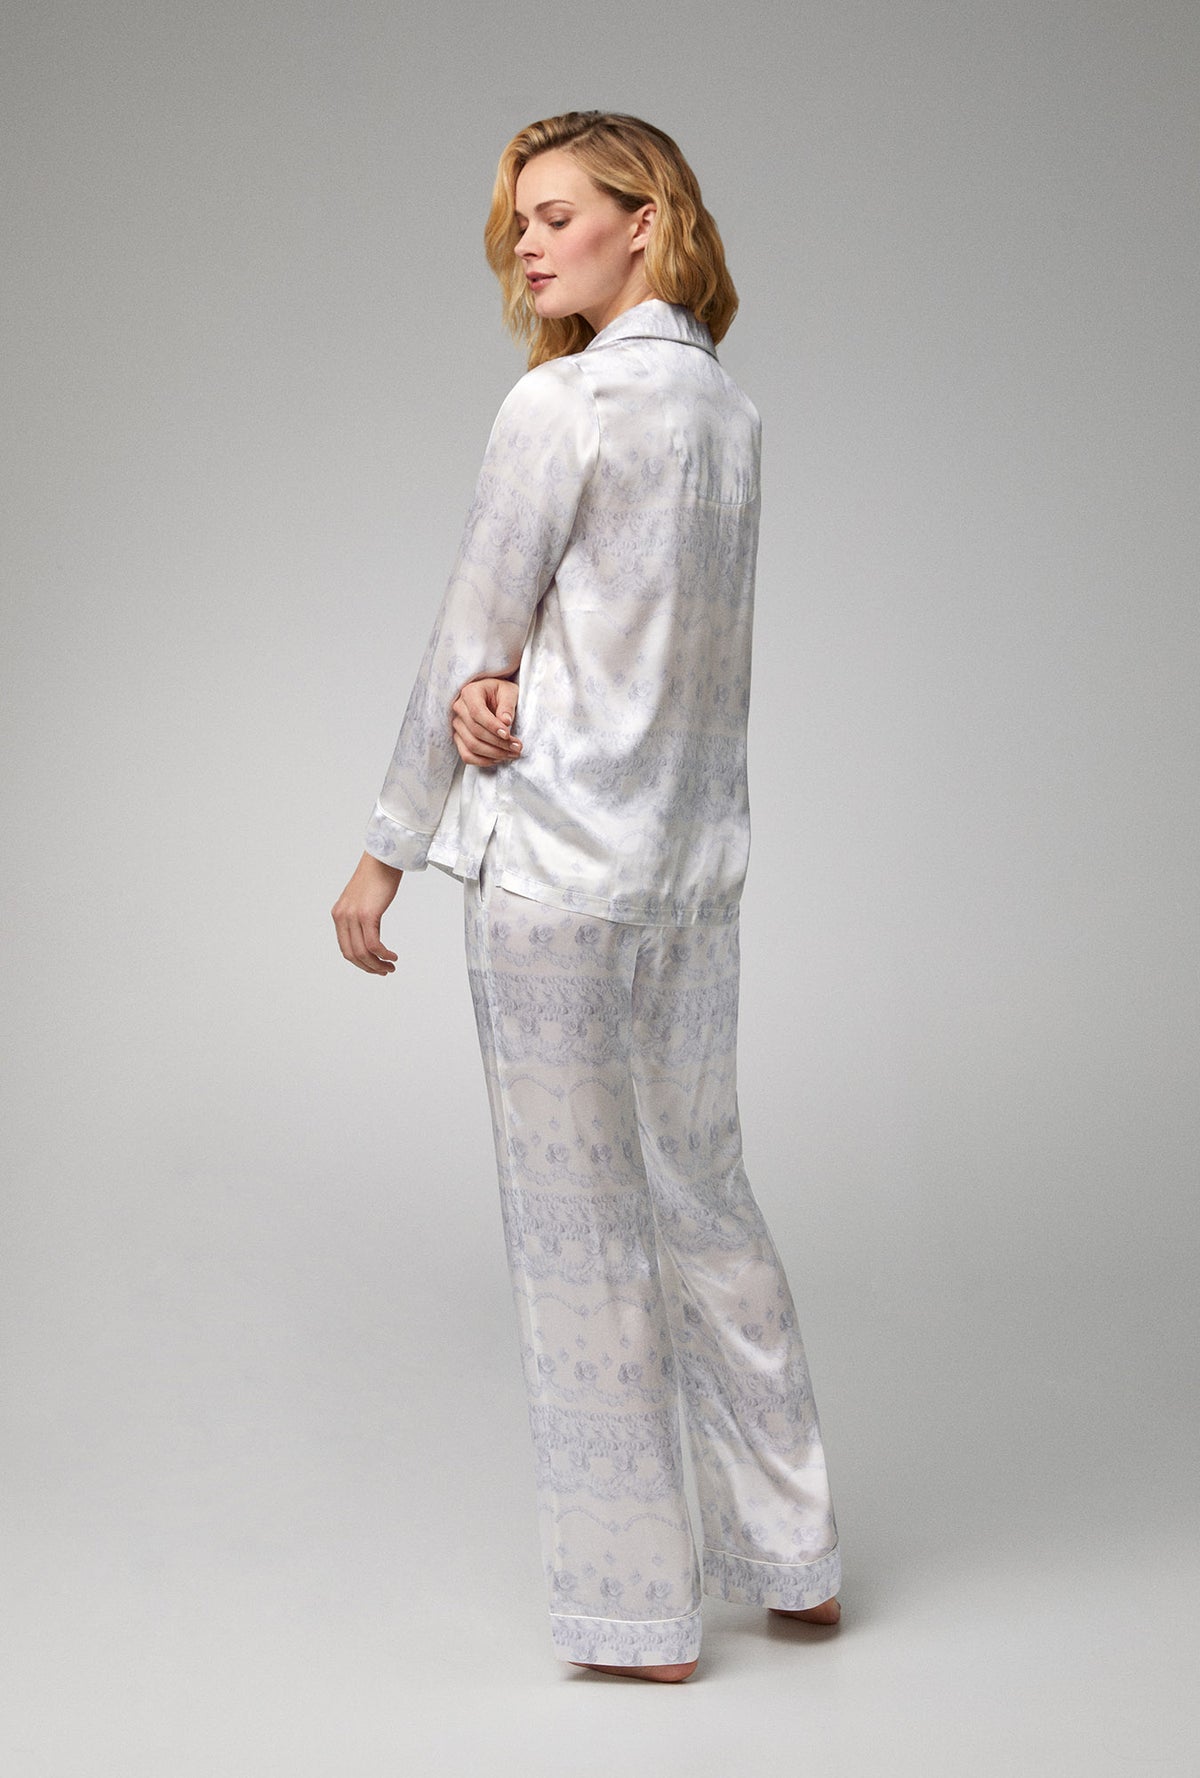 Women Silk Pajamas Set Printed with Pockets Ladies Gorgeous Silk Night